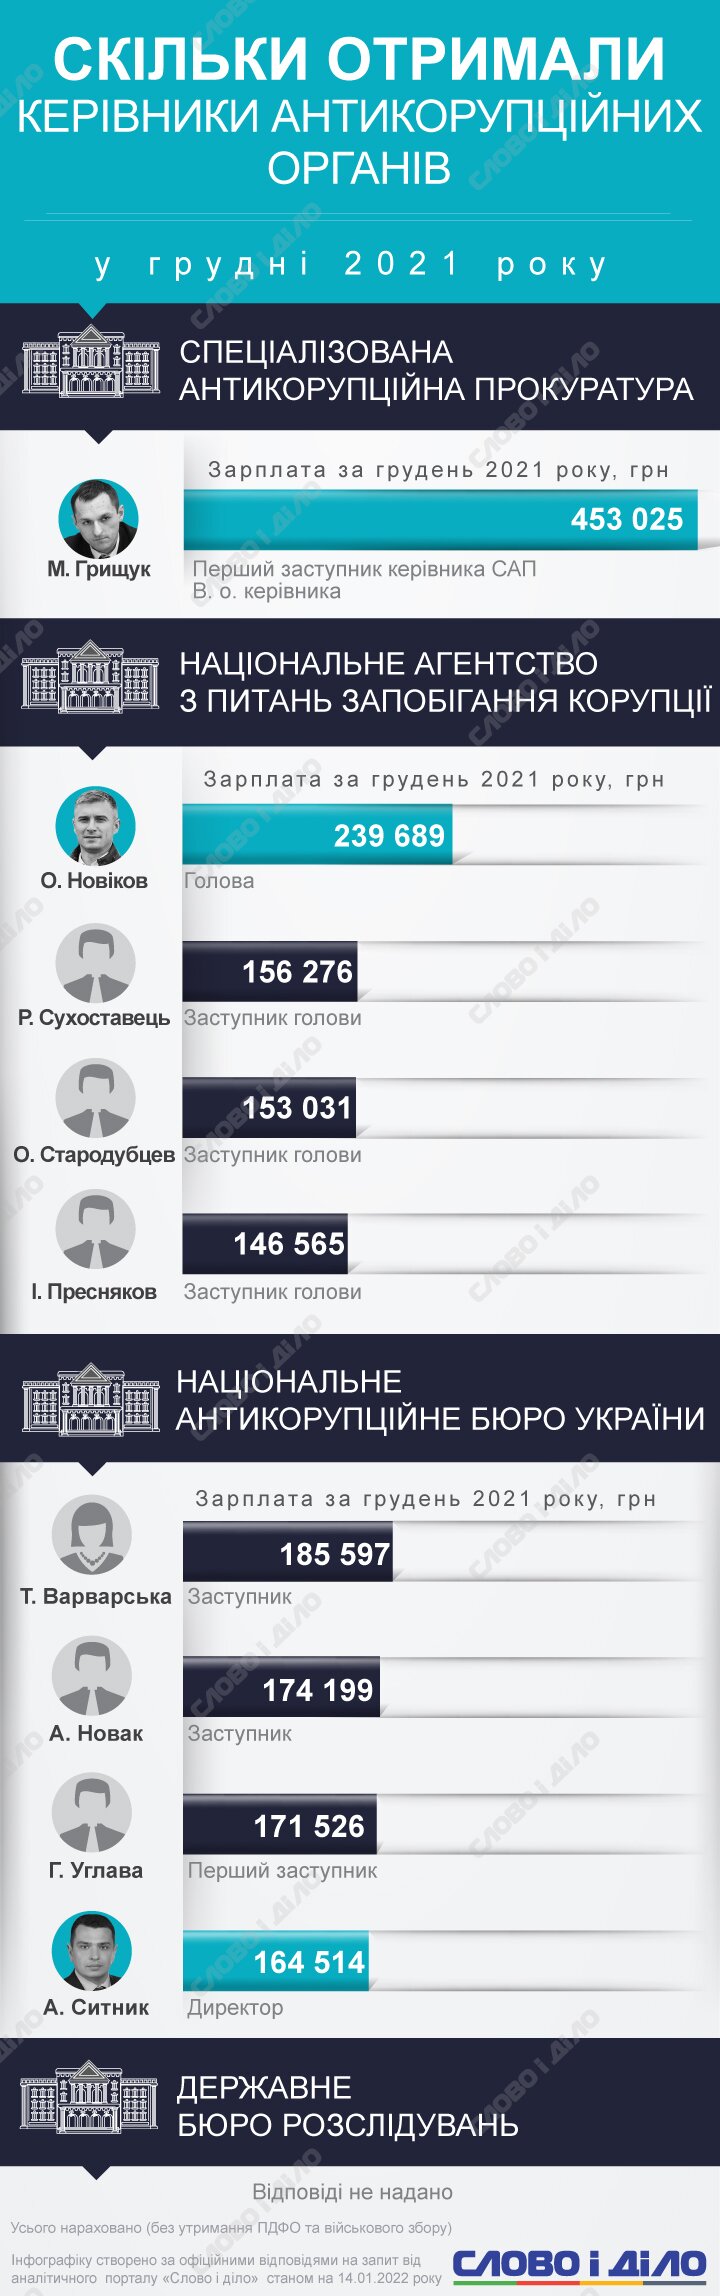 Найвища зарплата у грудні була у в.о. керівника САП Максима Грищука – понад 450 тисяч гривень.